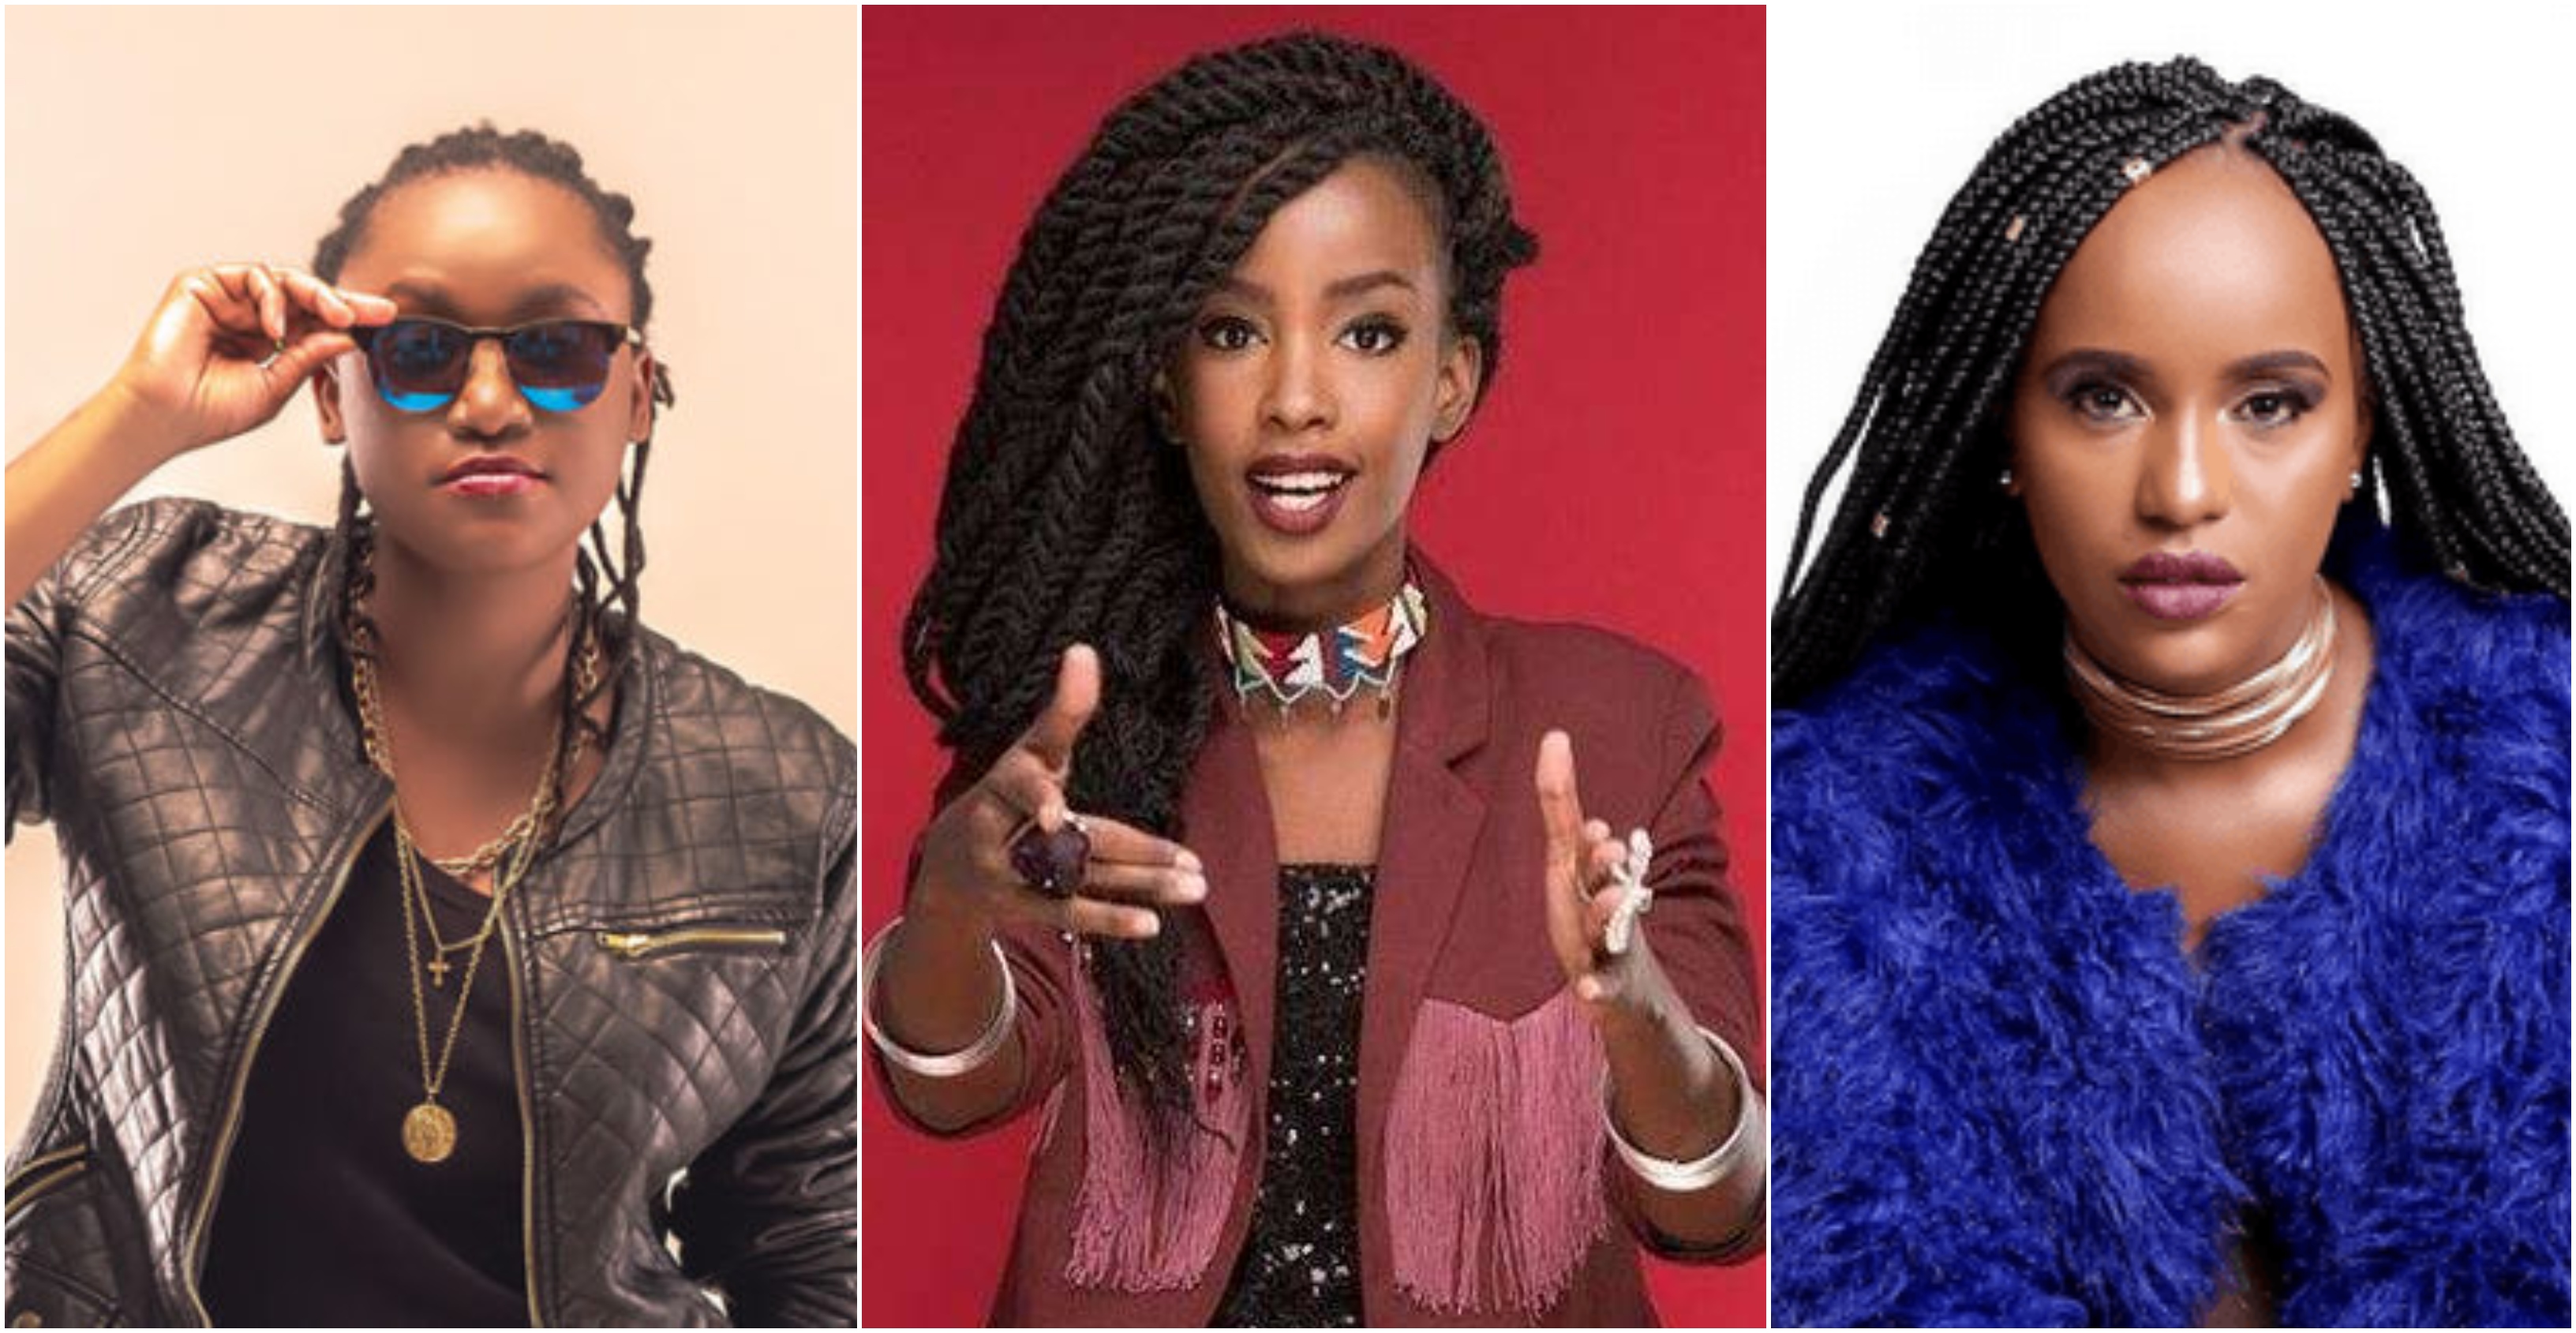 Fena Gitu Vs Wangechi Vs  Femi One: Who is the best female rapper?